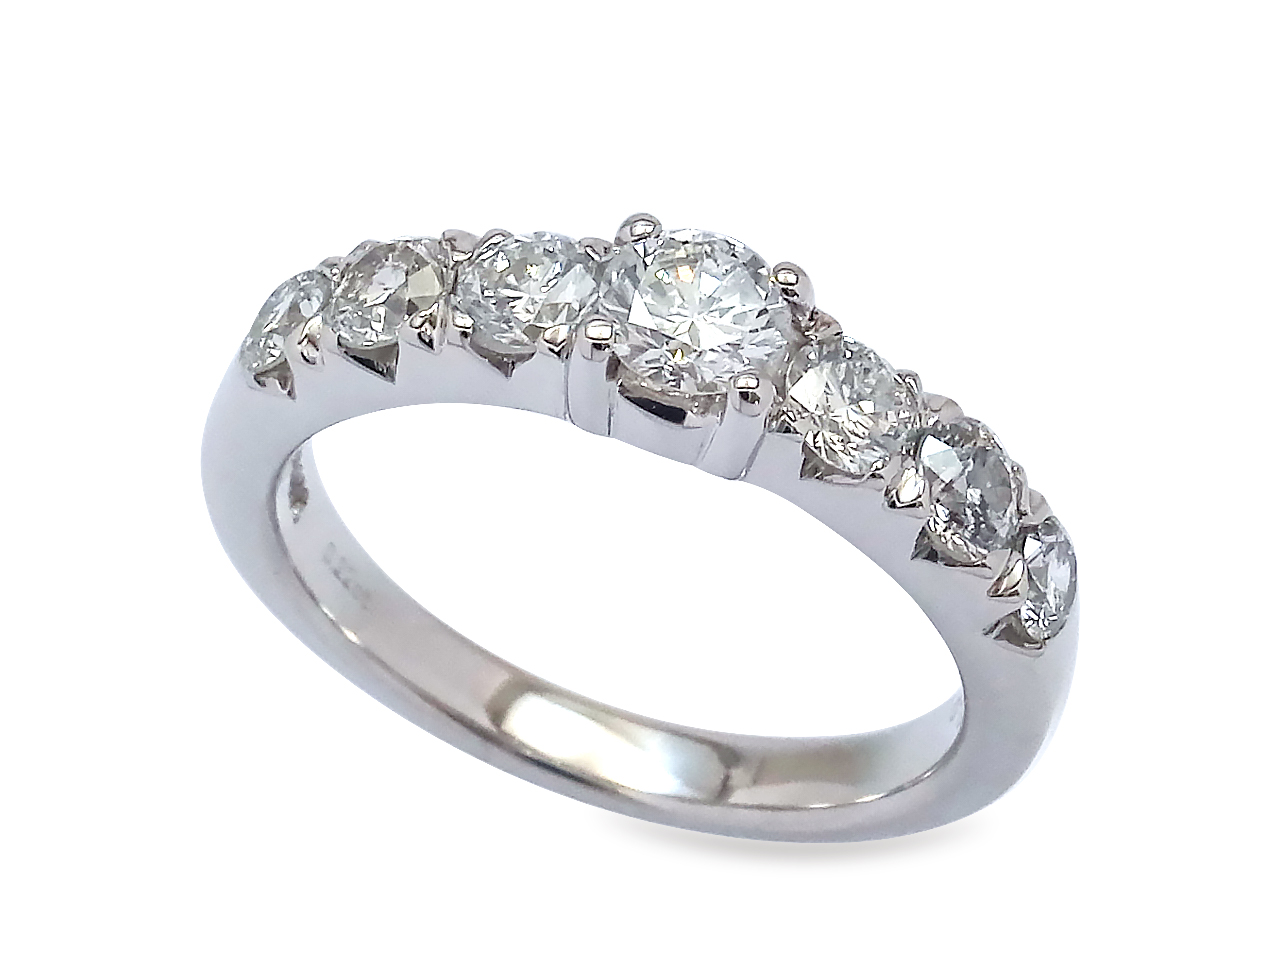 母の形見の指輪２本をリフォームして自分の婚約指輪を作る